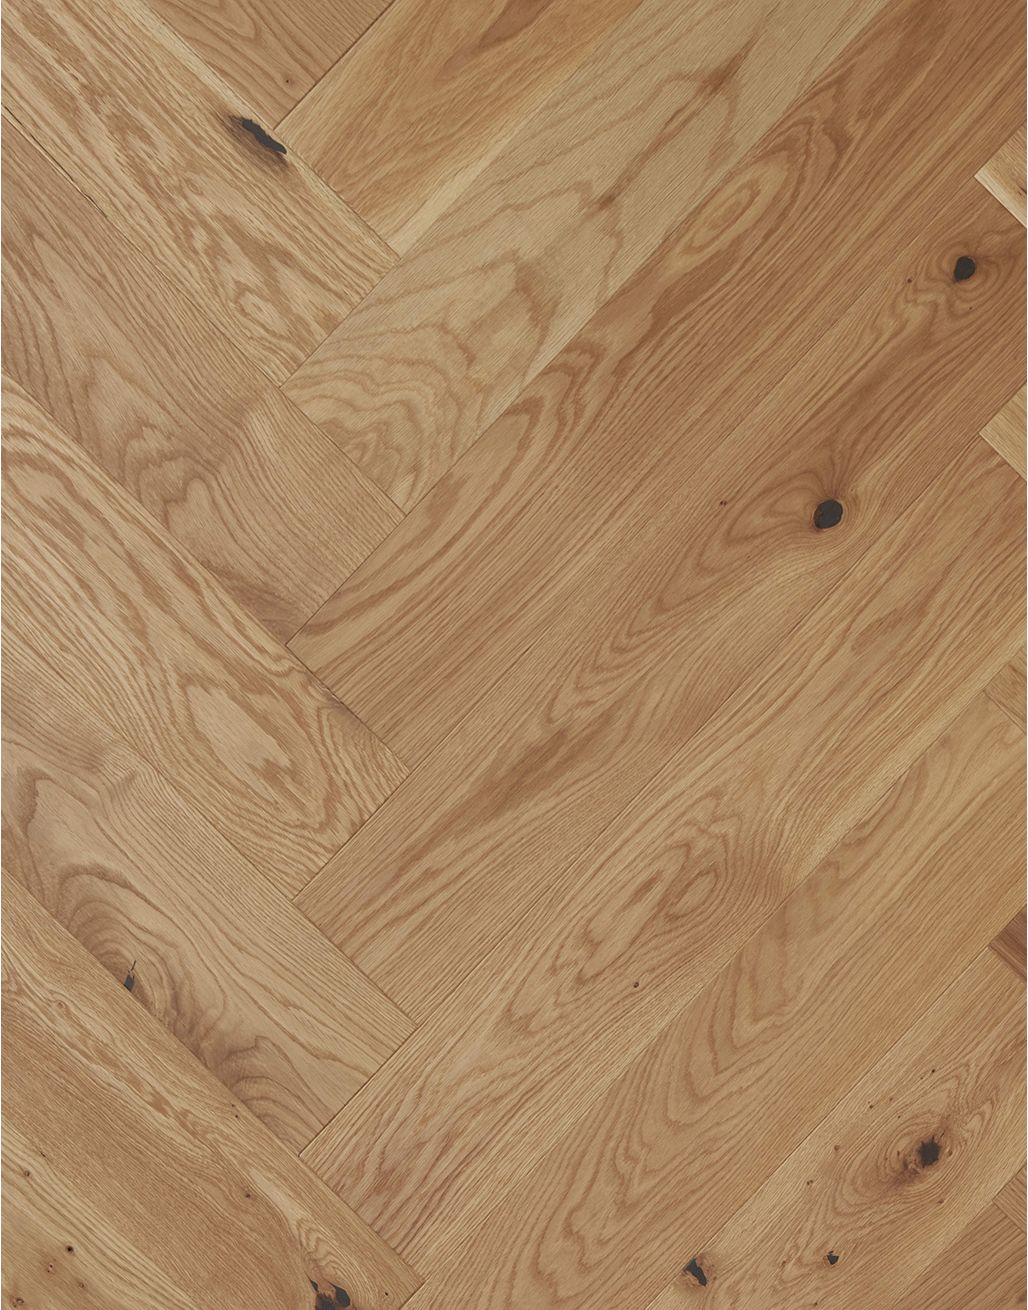 Marylebone Harvest Brown Oak Brushed & Oiled Engineered Wood Flooring 3